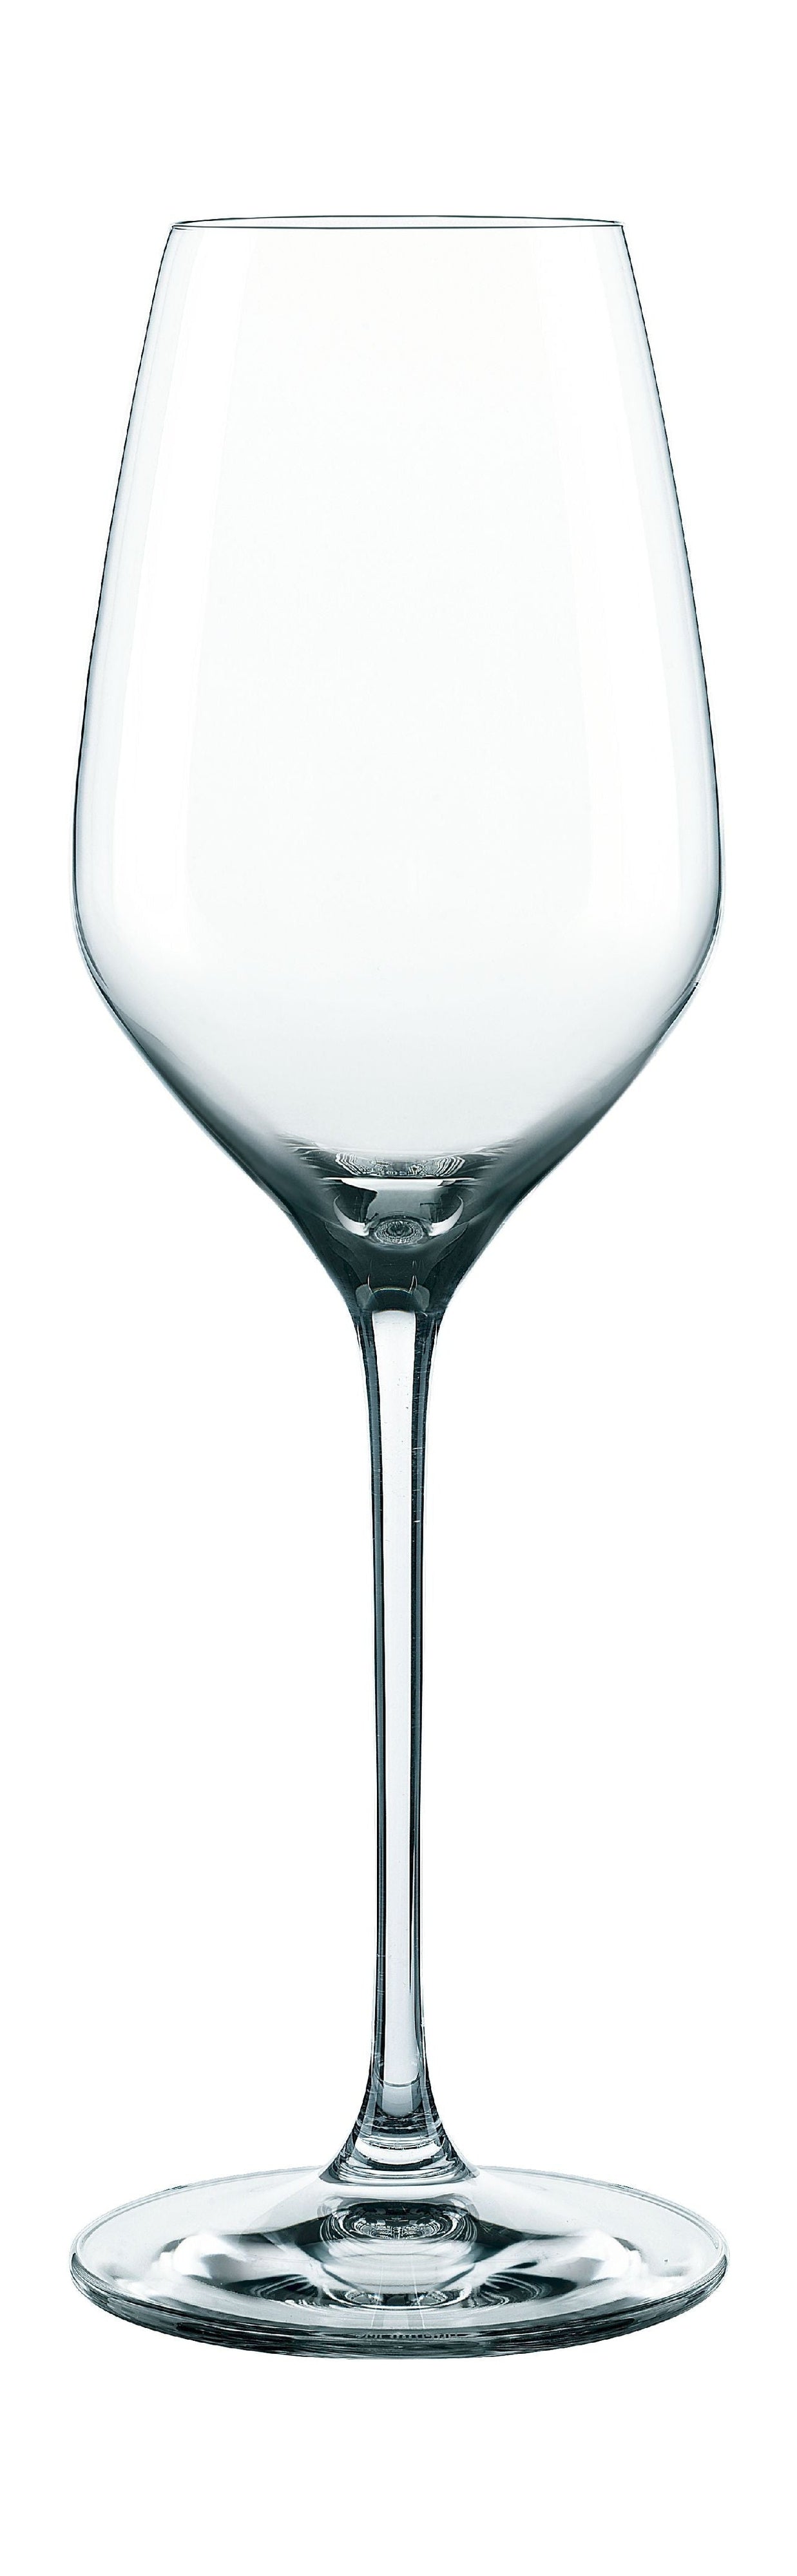 Nachtmann Supreme Xl White Wine Glasses 500 Ml, Set Of 4